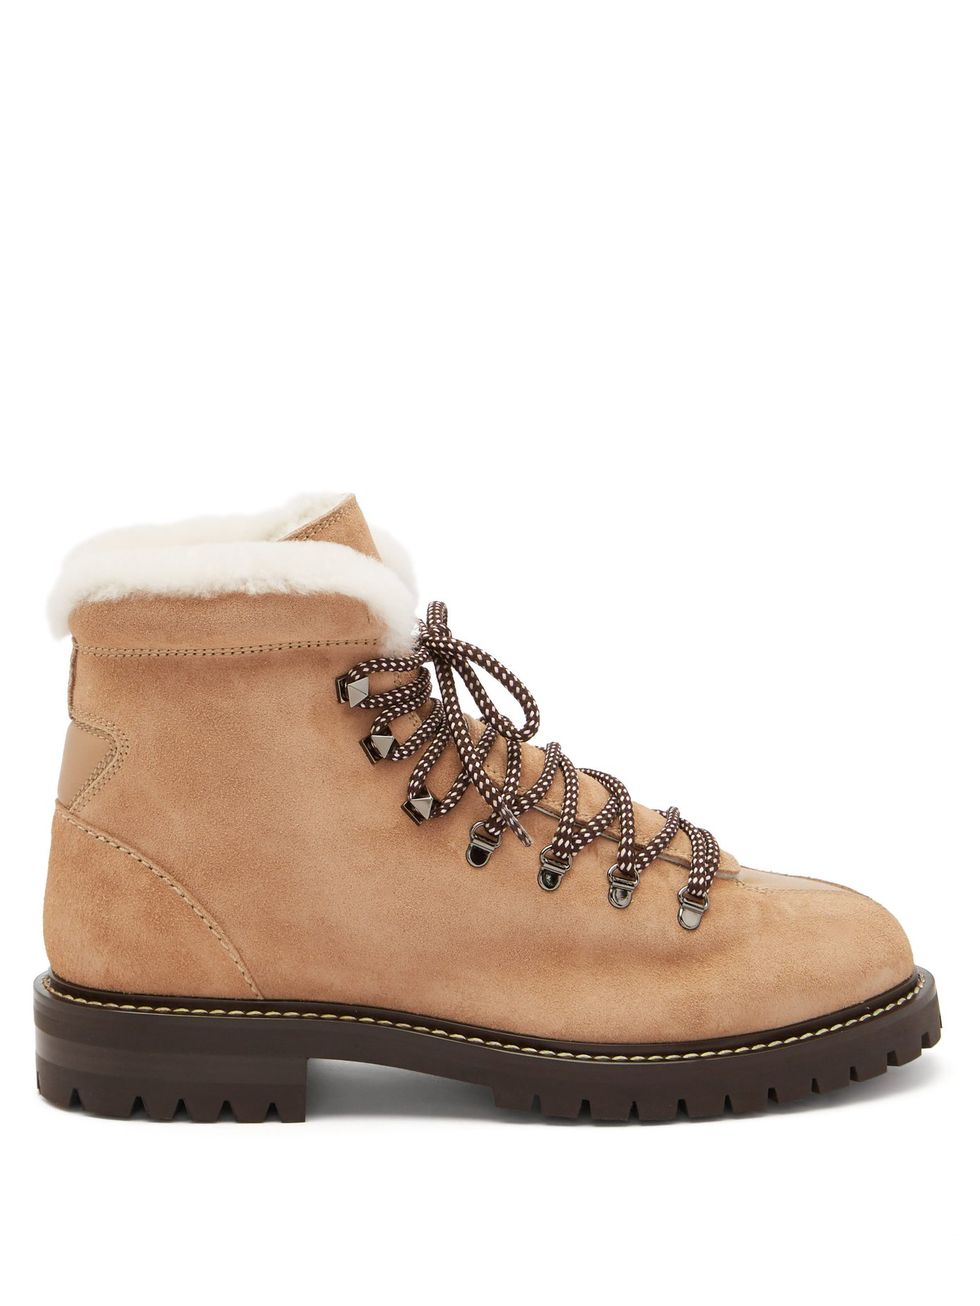 Rockstud-embellished leather hiking boots